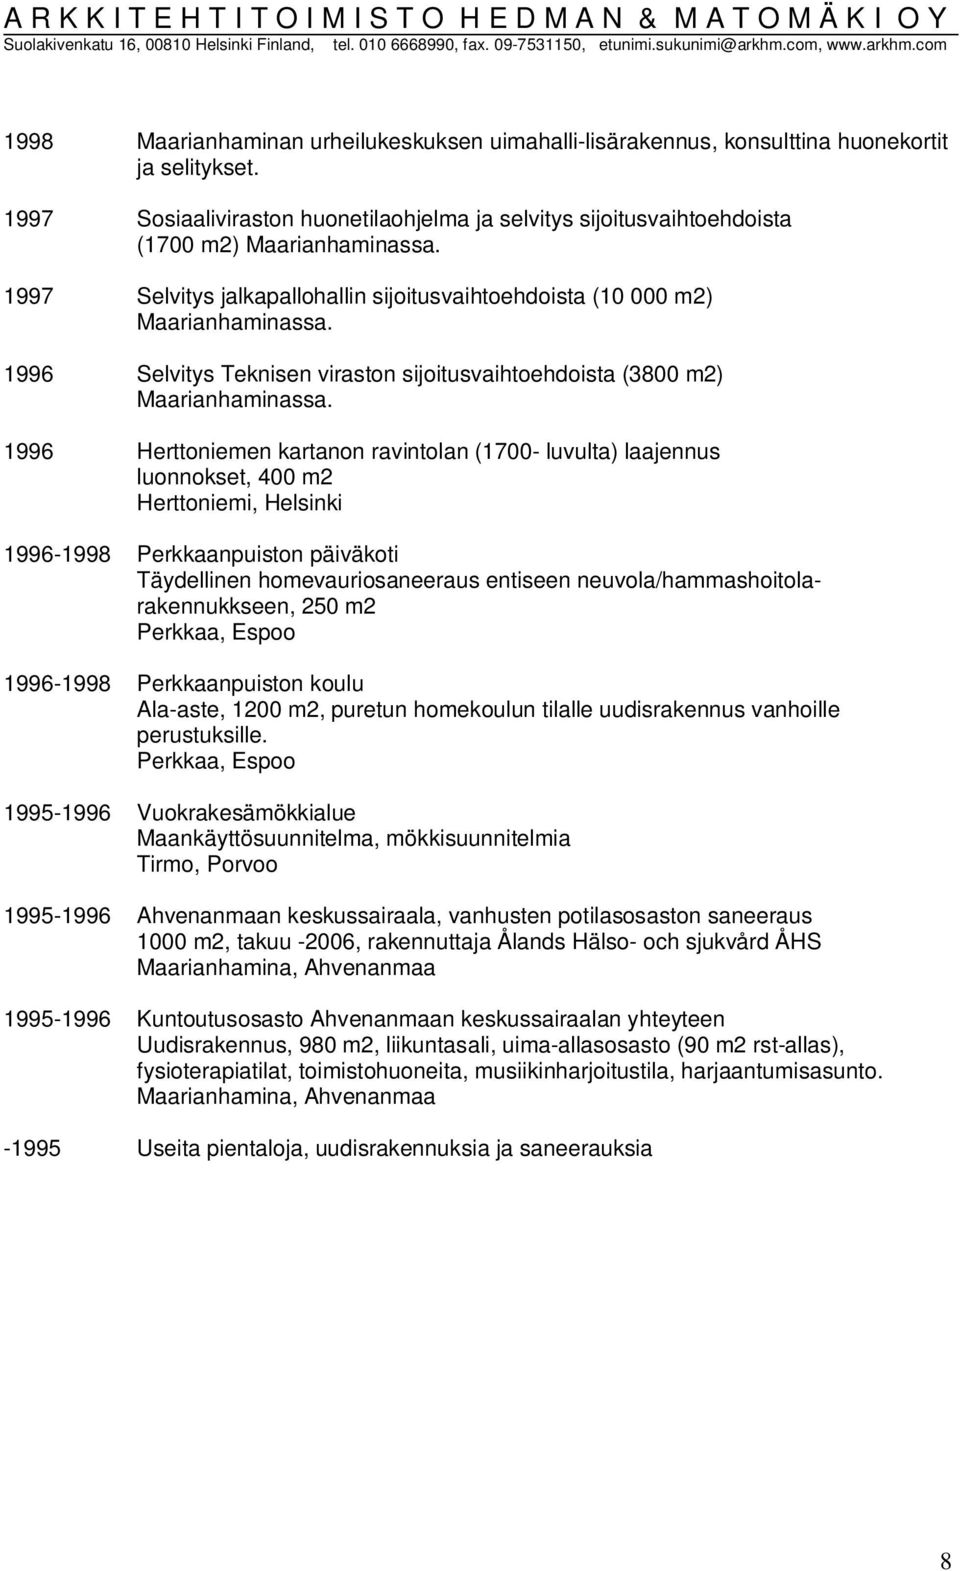 1996 Selvitys Teknisen viraston sijoitusvaihtoehdoista (3800 m2) Maarianhaminassa.